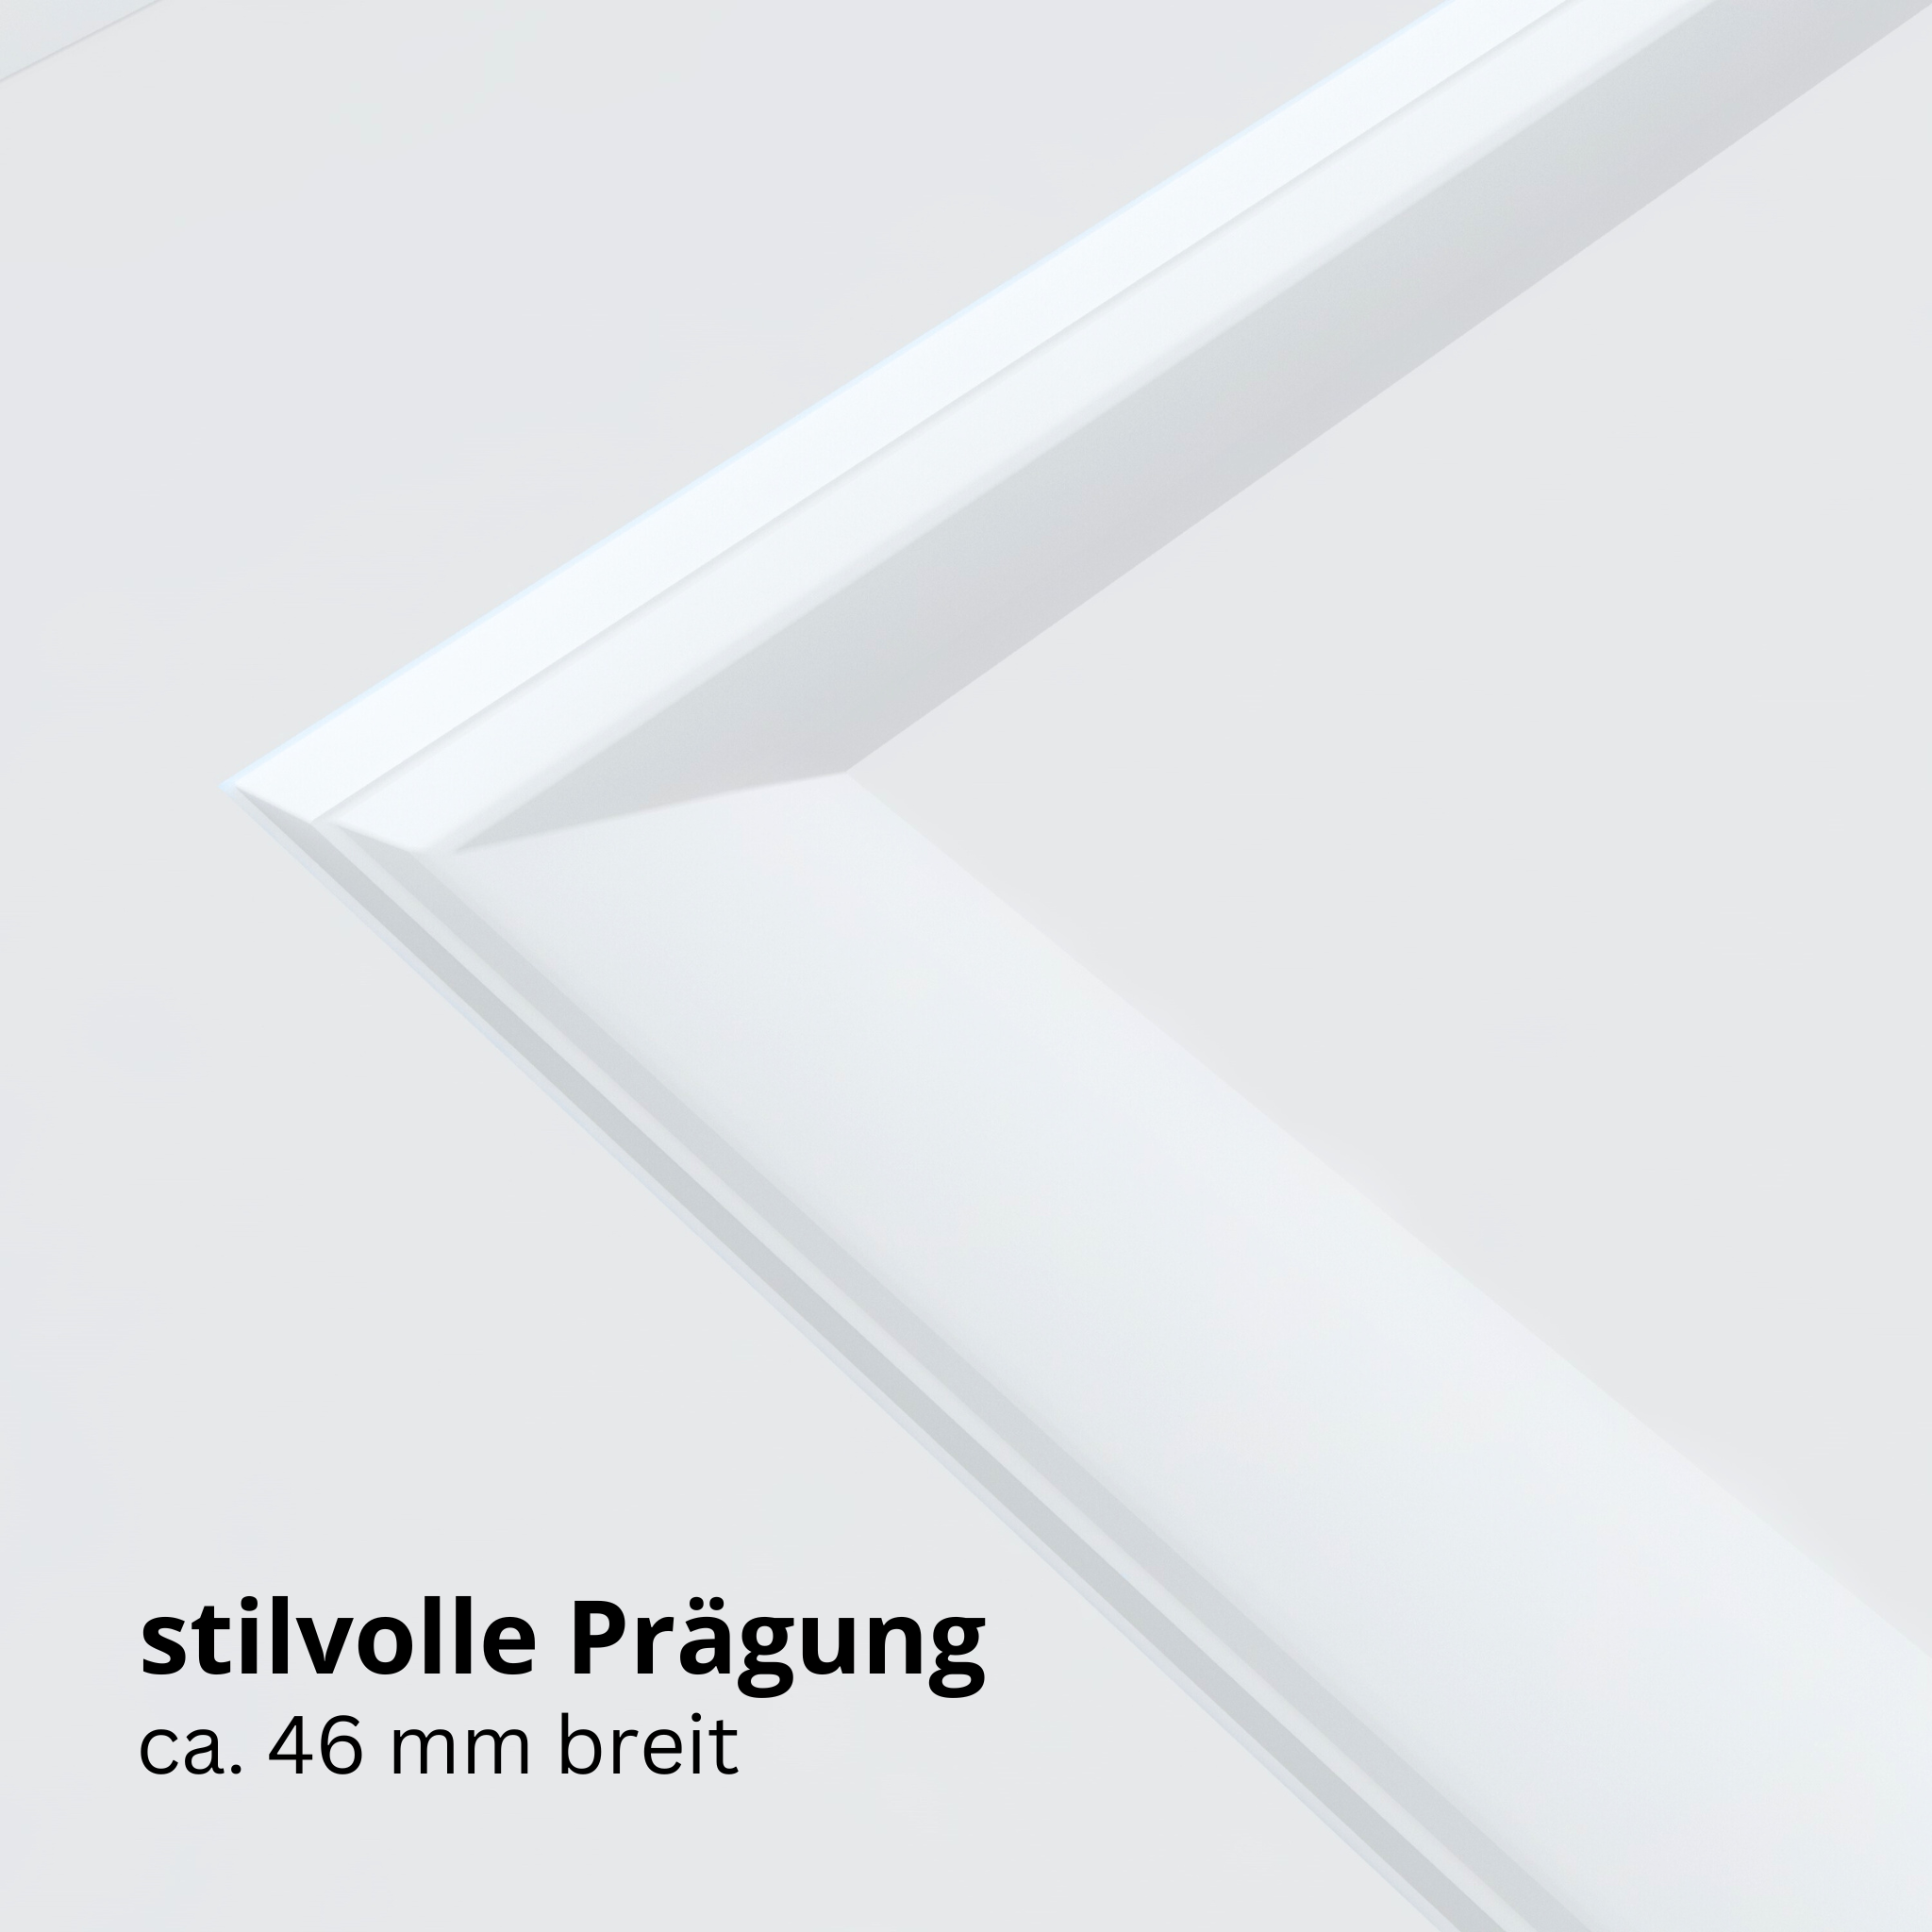 Wohnungseingangstür mit Zarge brillant-weiß 4 Kassetten Designkante SK1 / KK3 - Modell Stiltür K43